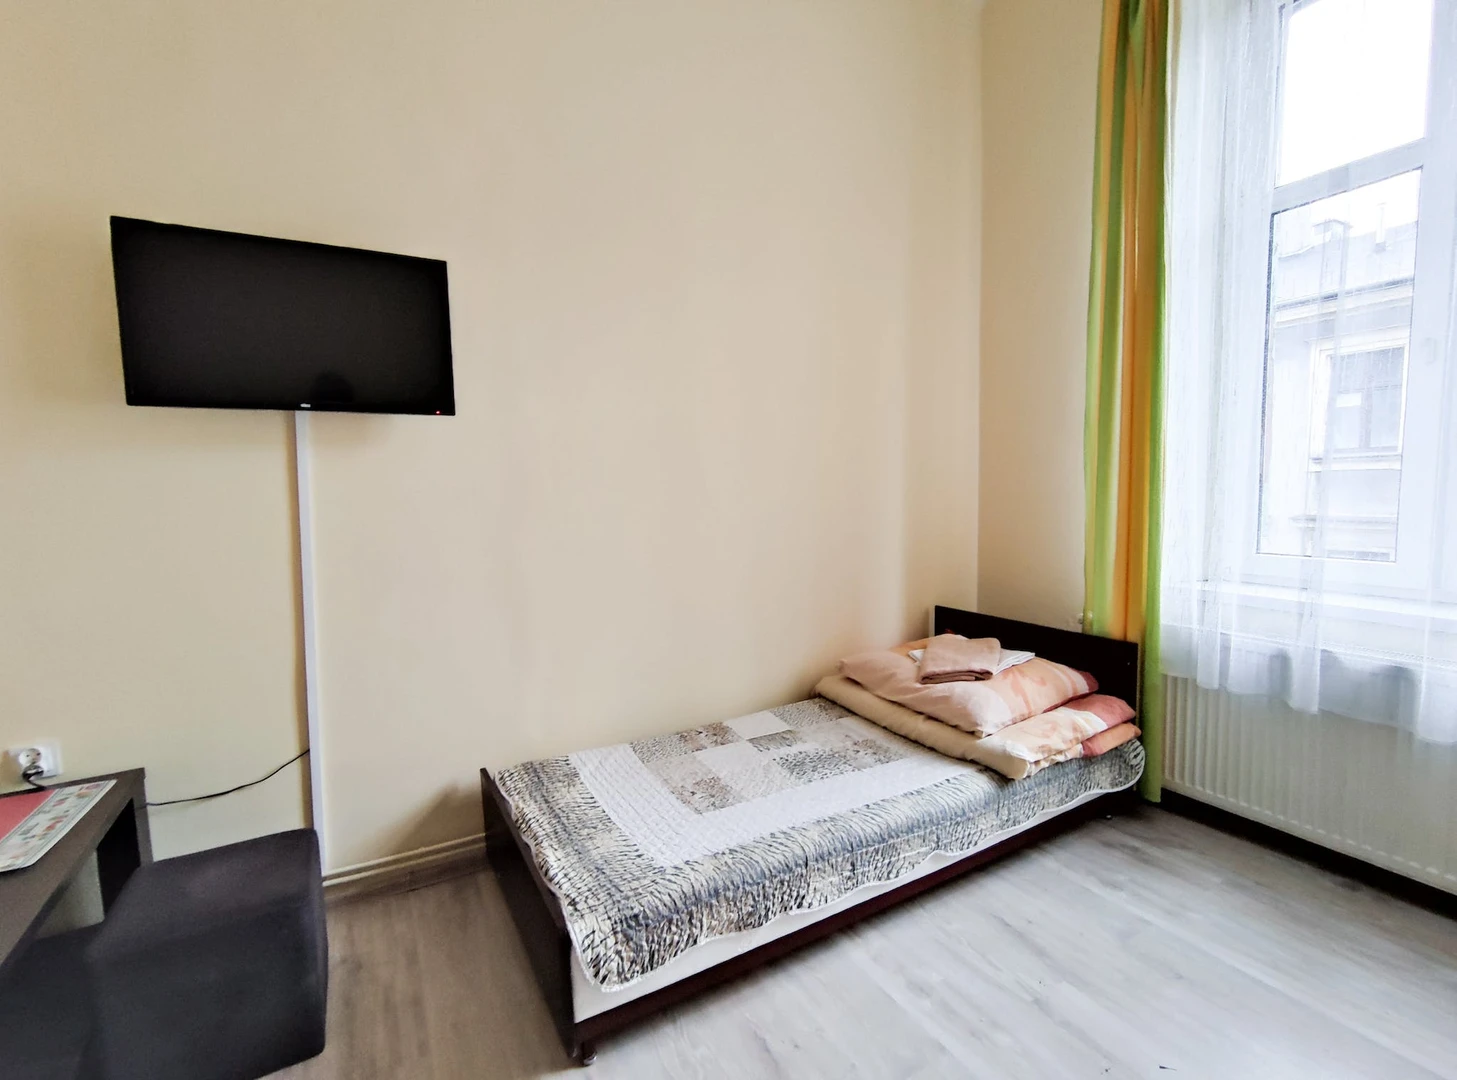 Kraków de çift kişilik yataklı kiralık oda